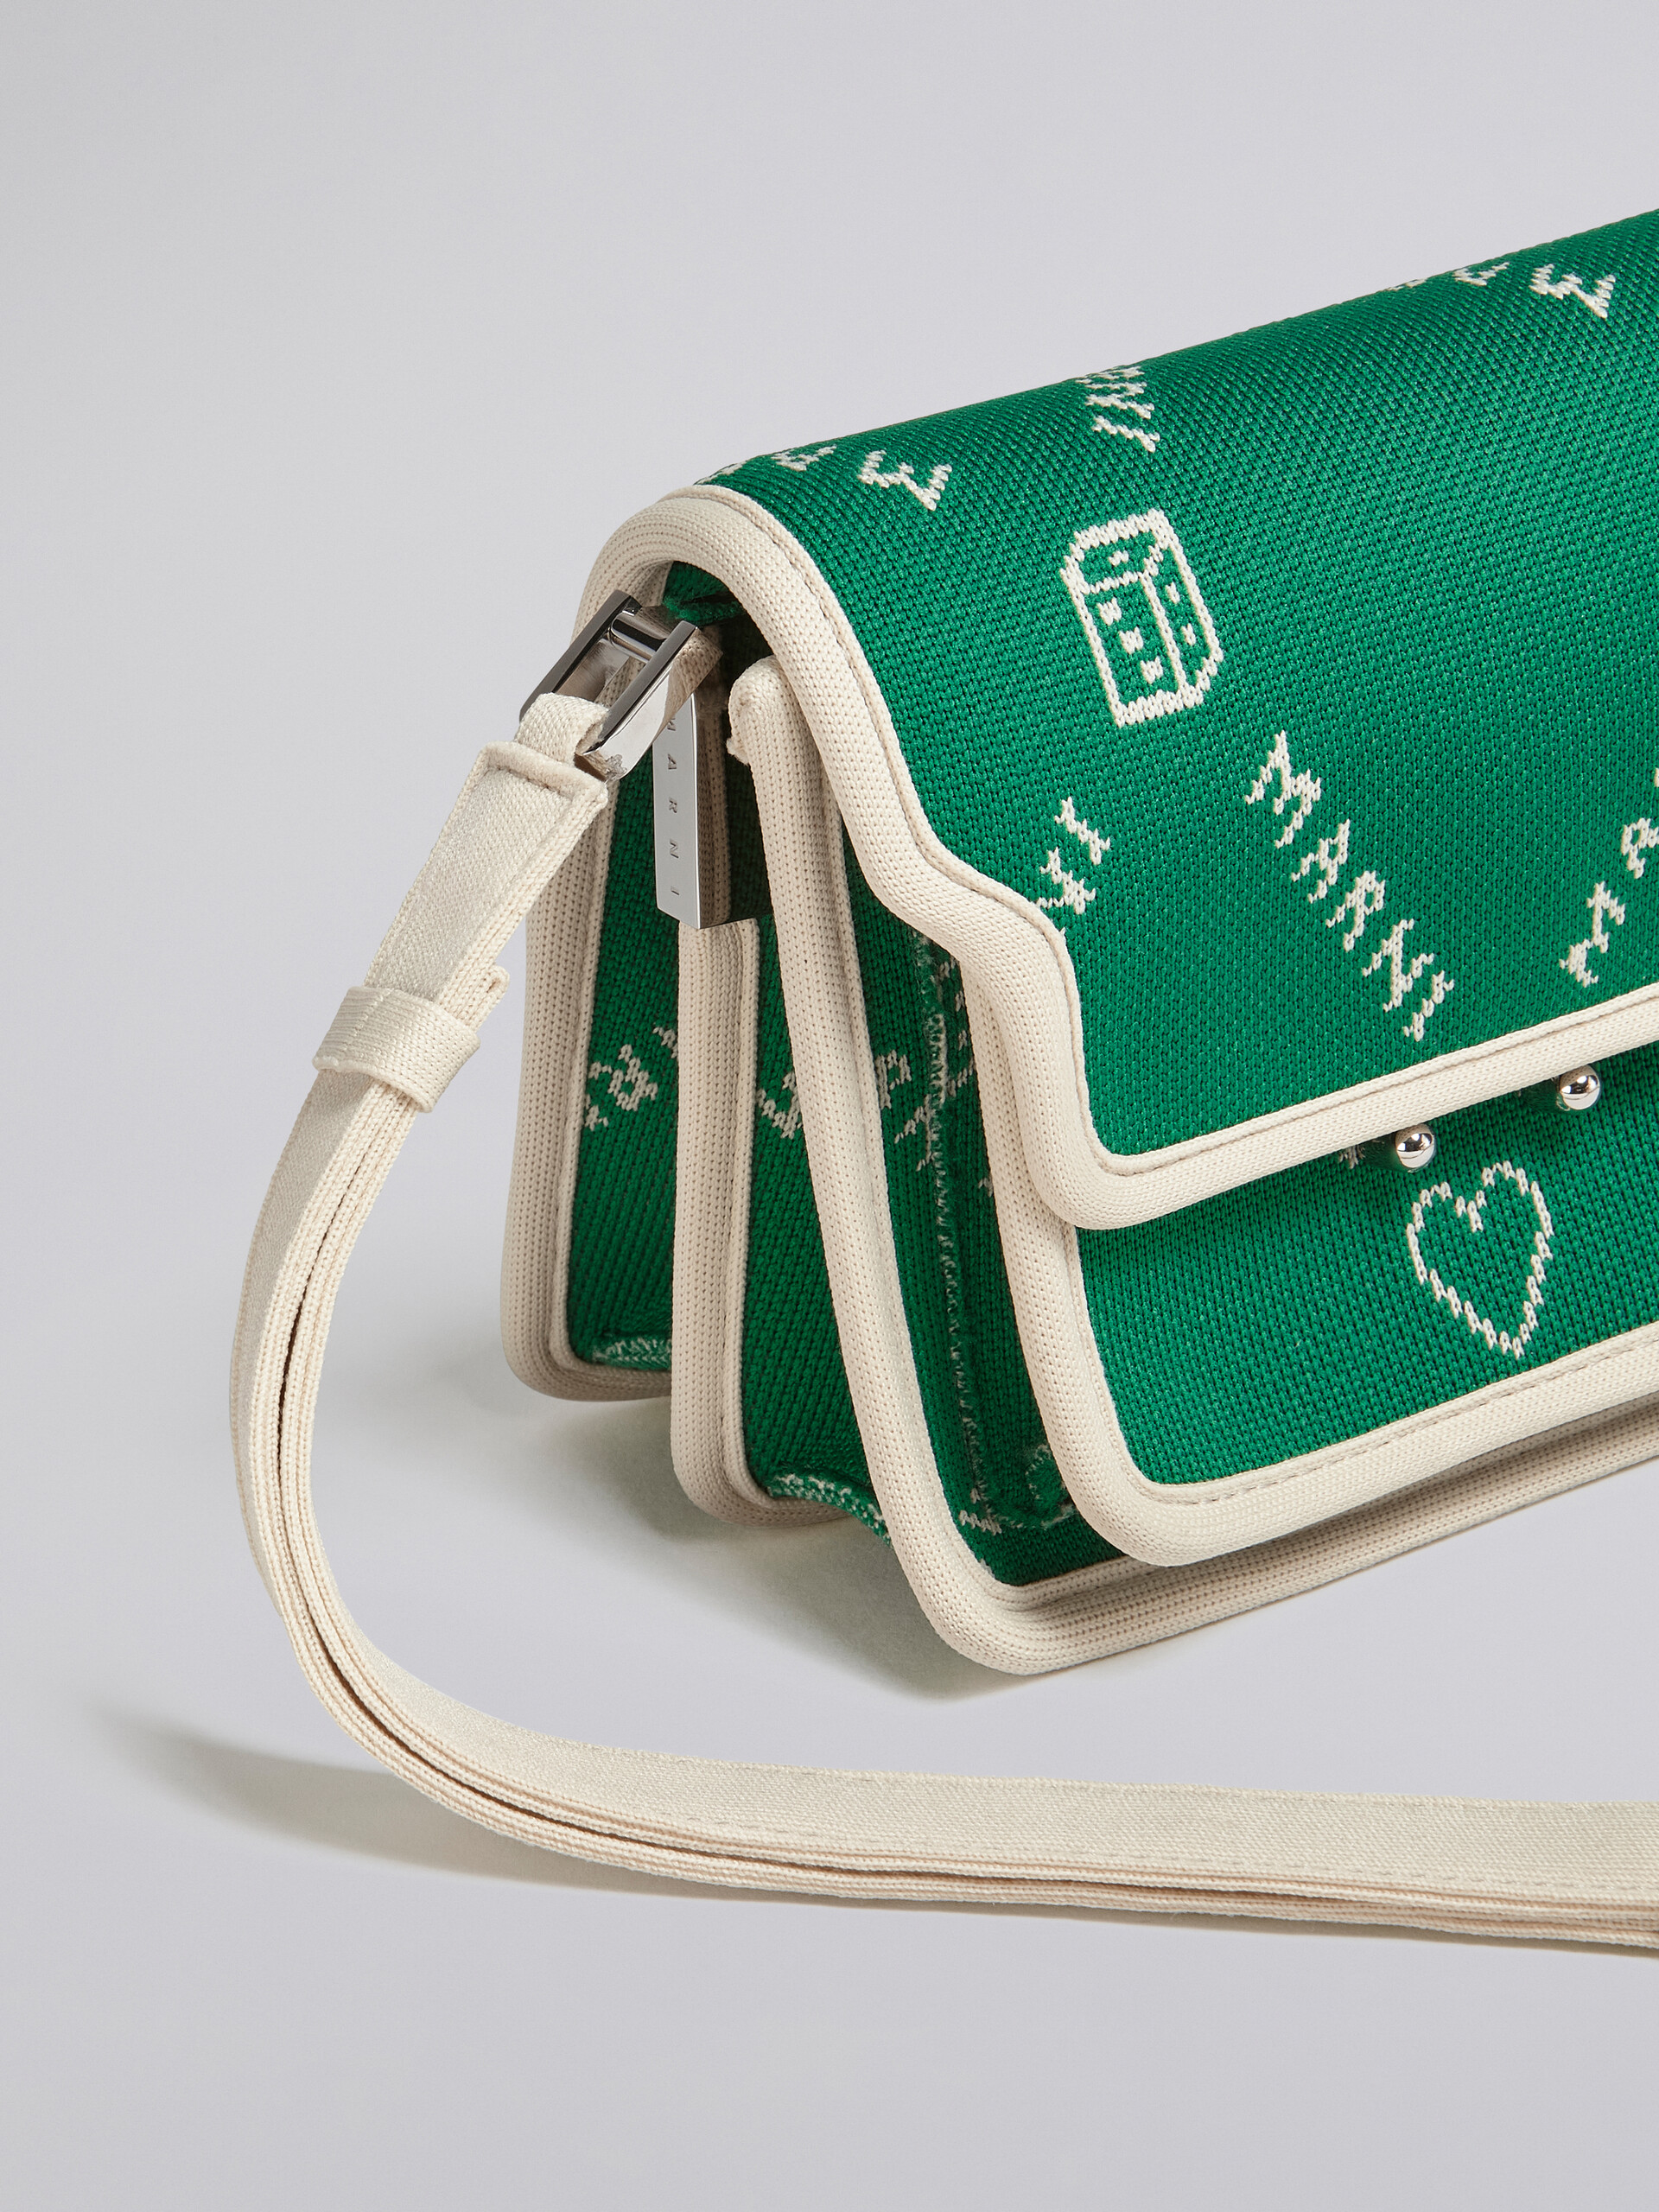 TRUNK SOFT mini bag in green Marnigram jacquard - Shoulder Bags - Image 5